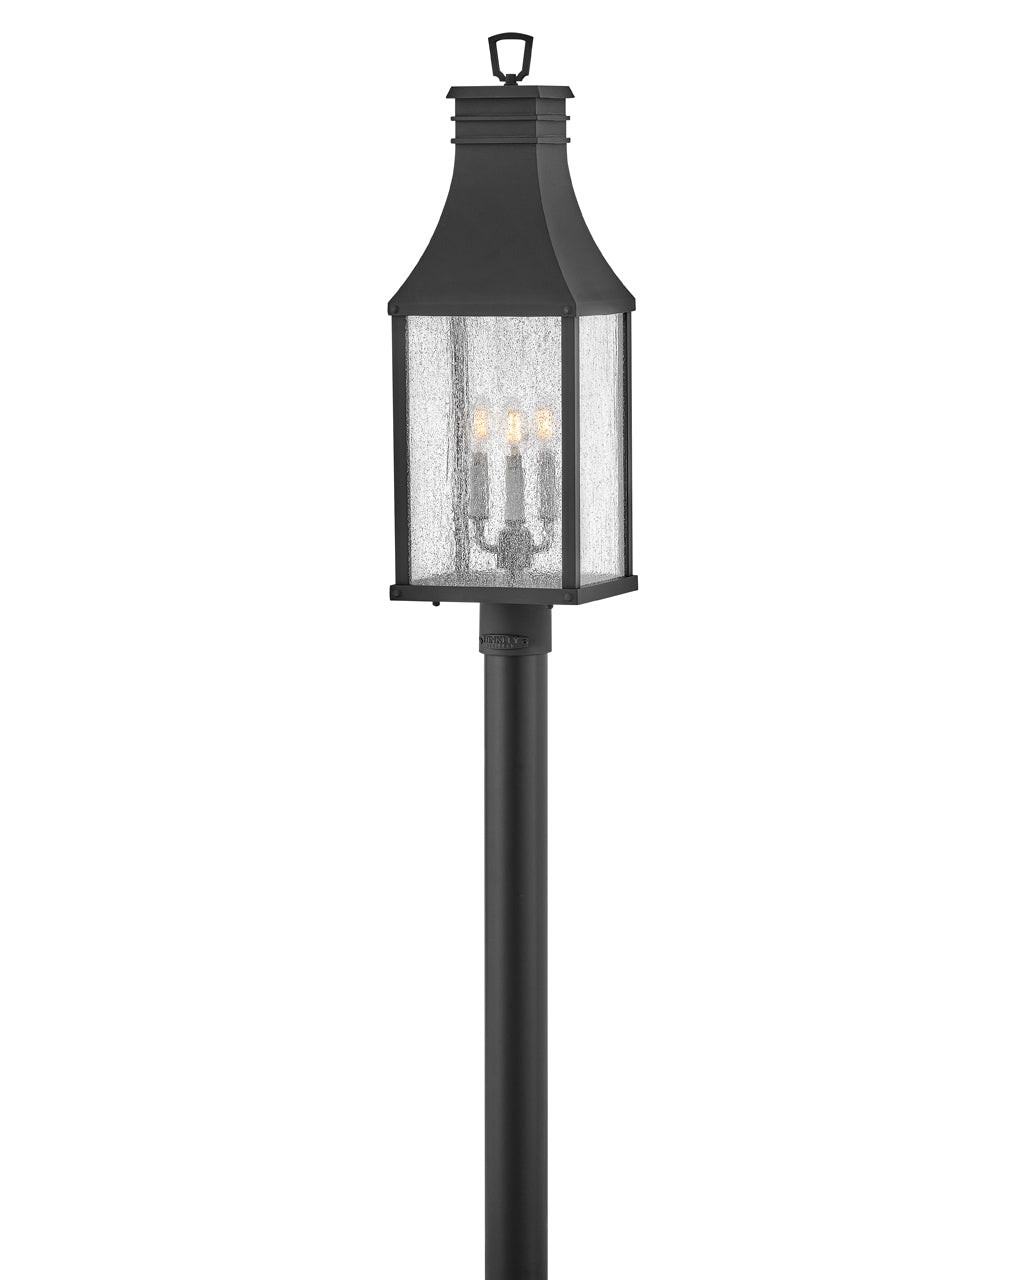 OUTDOOR BEACON HILL Post Top or Pier Mount Lantern Outdoor Light Fixture Hinkley Museum Black 7.75x9.0x26.25 